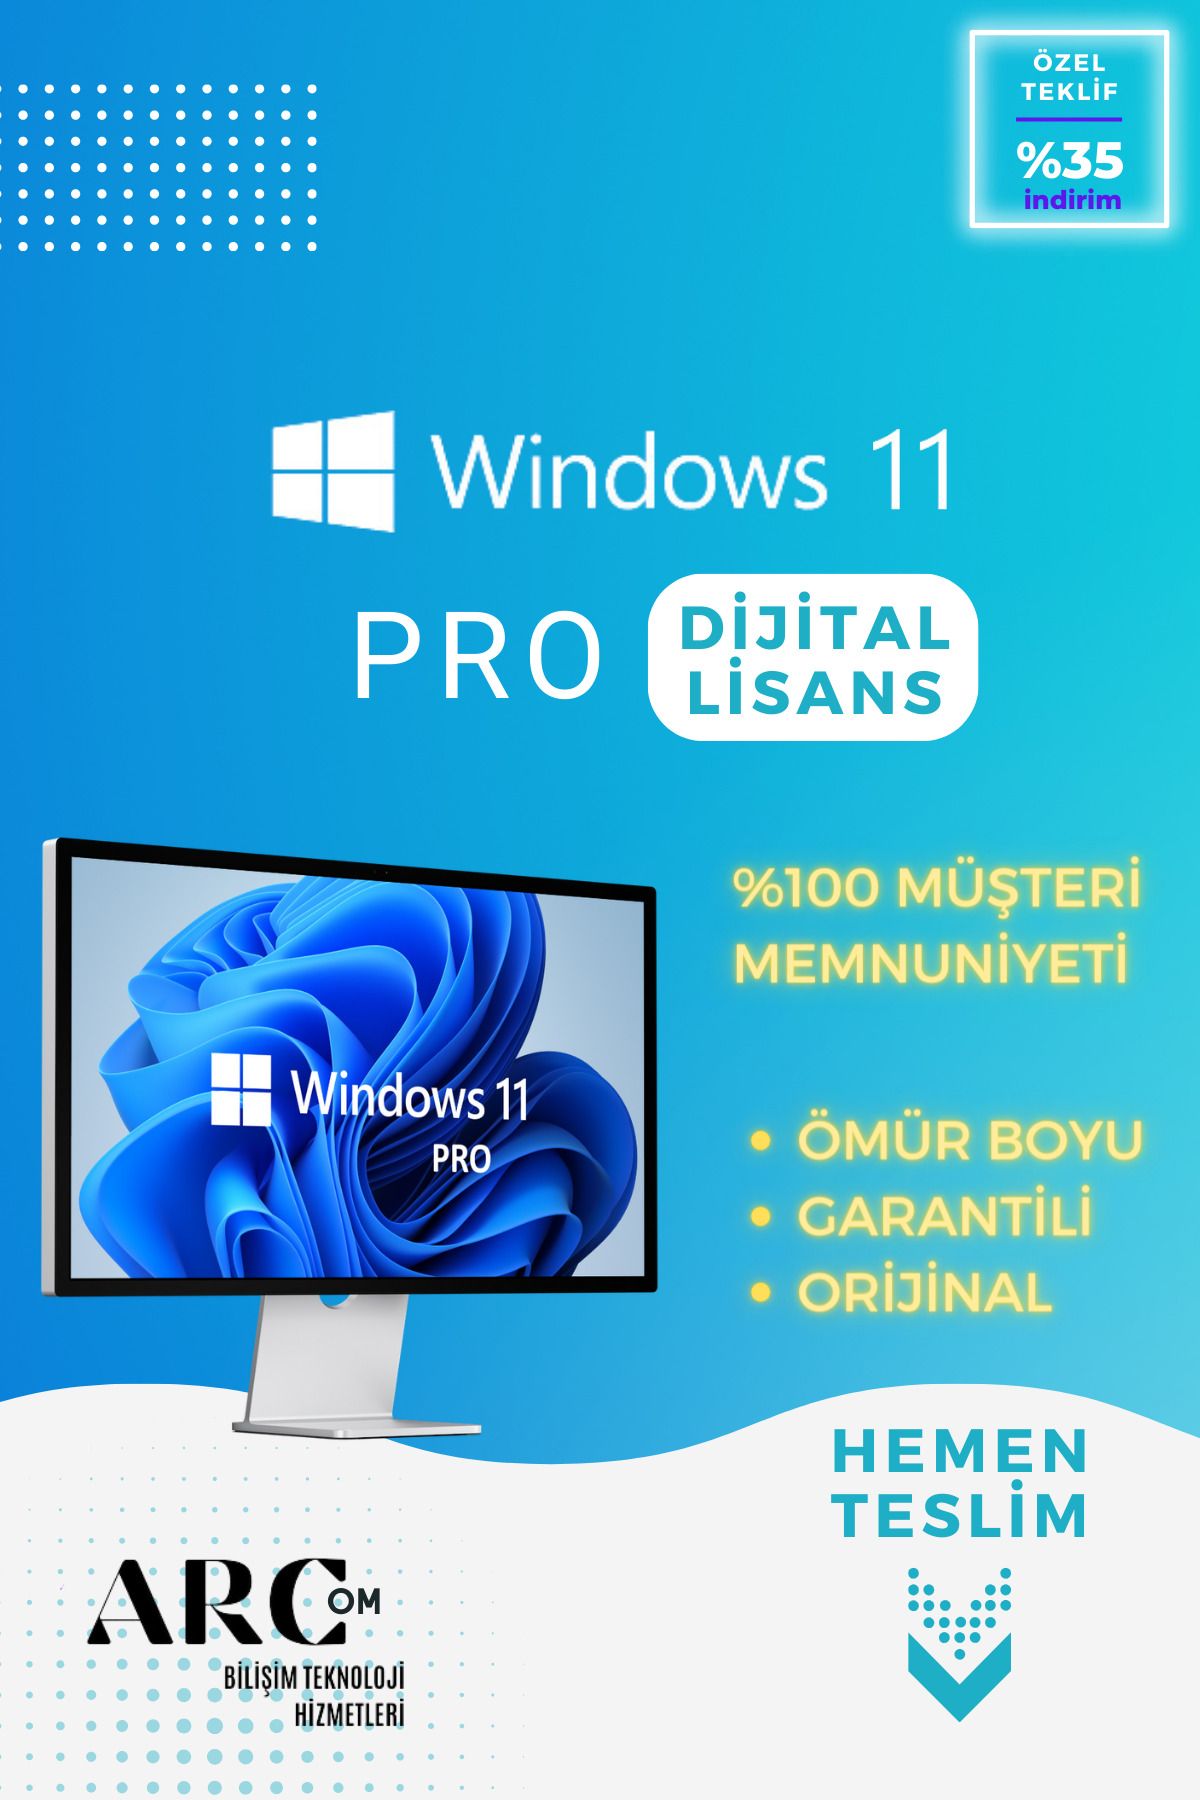 Microsoft Windows 11 PRO OEM - Dijital Lisans Anahtarı - ORİJİNAL, ÖMÜR BOYU, GARANTİLİ, ESD KEY HEMEN TESLİM